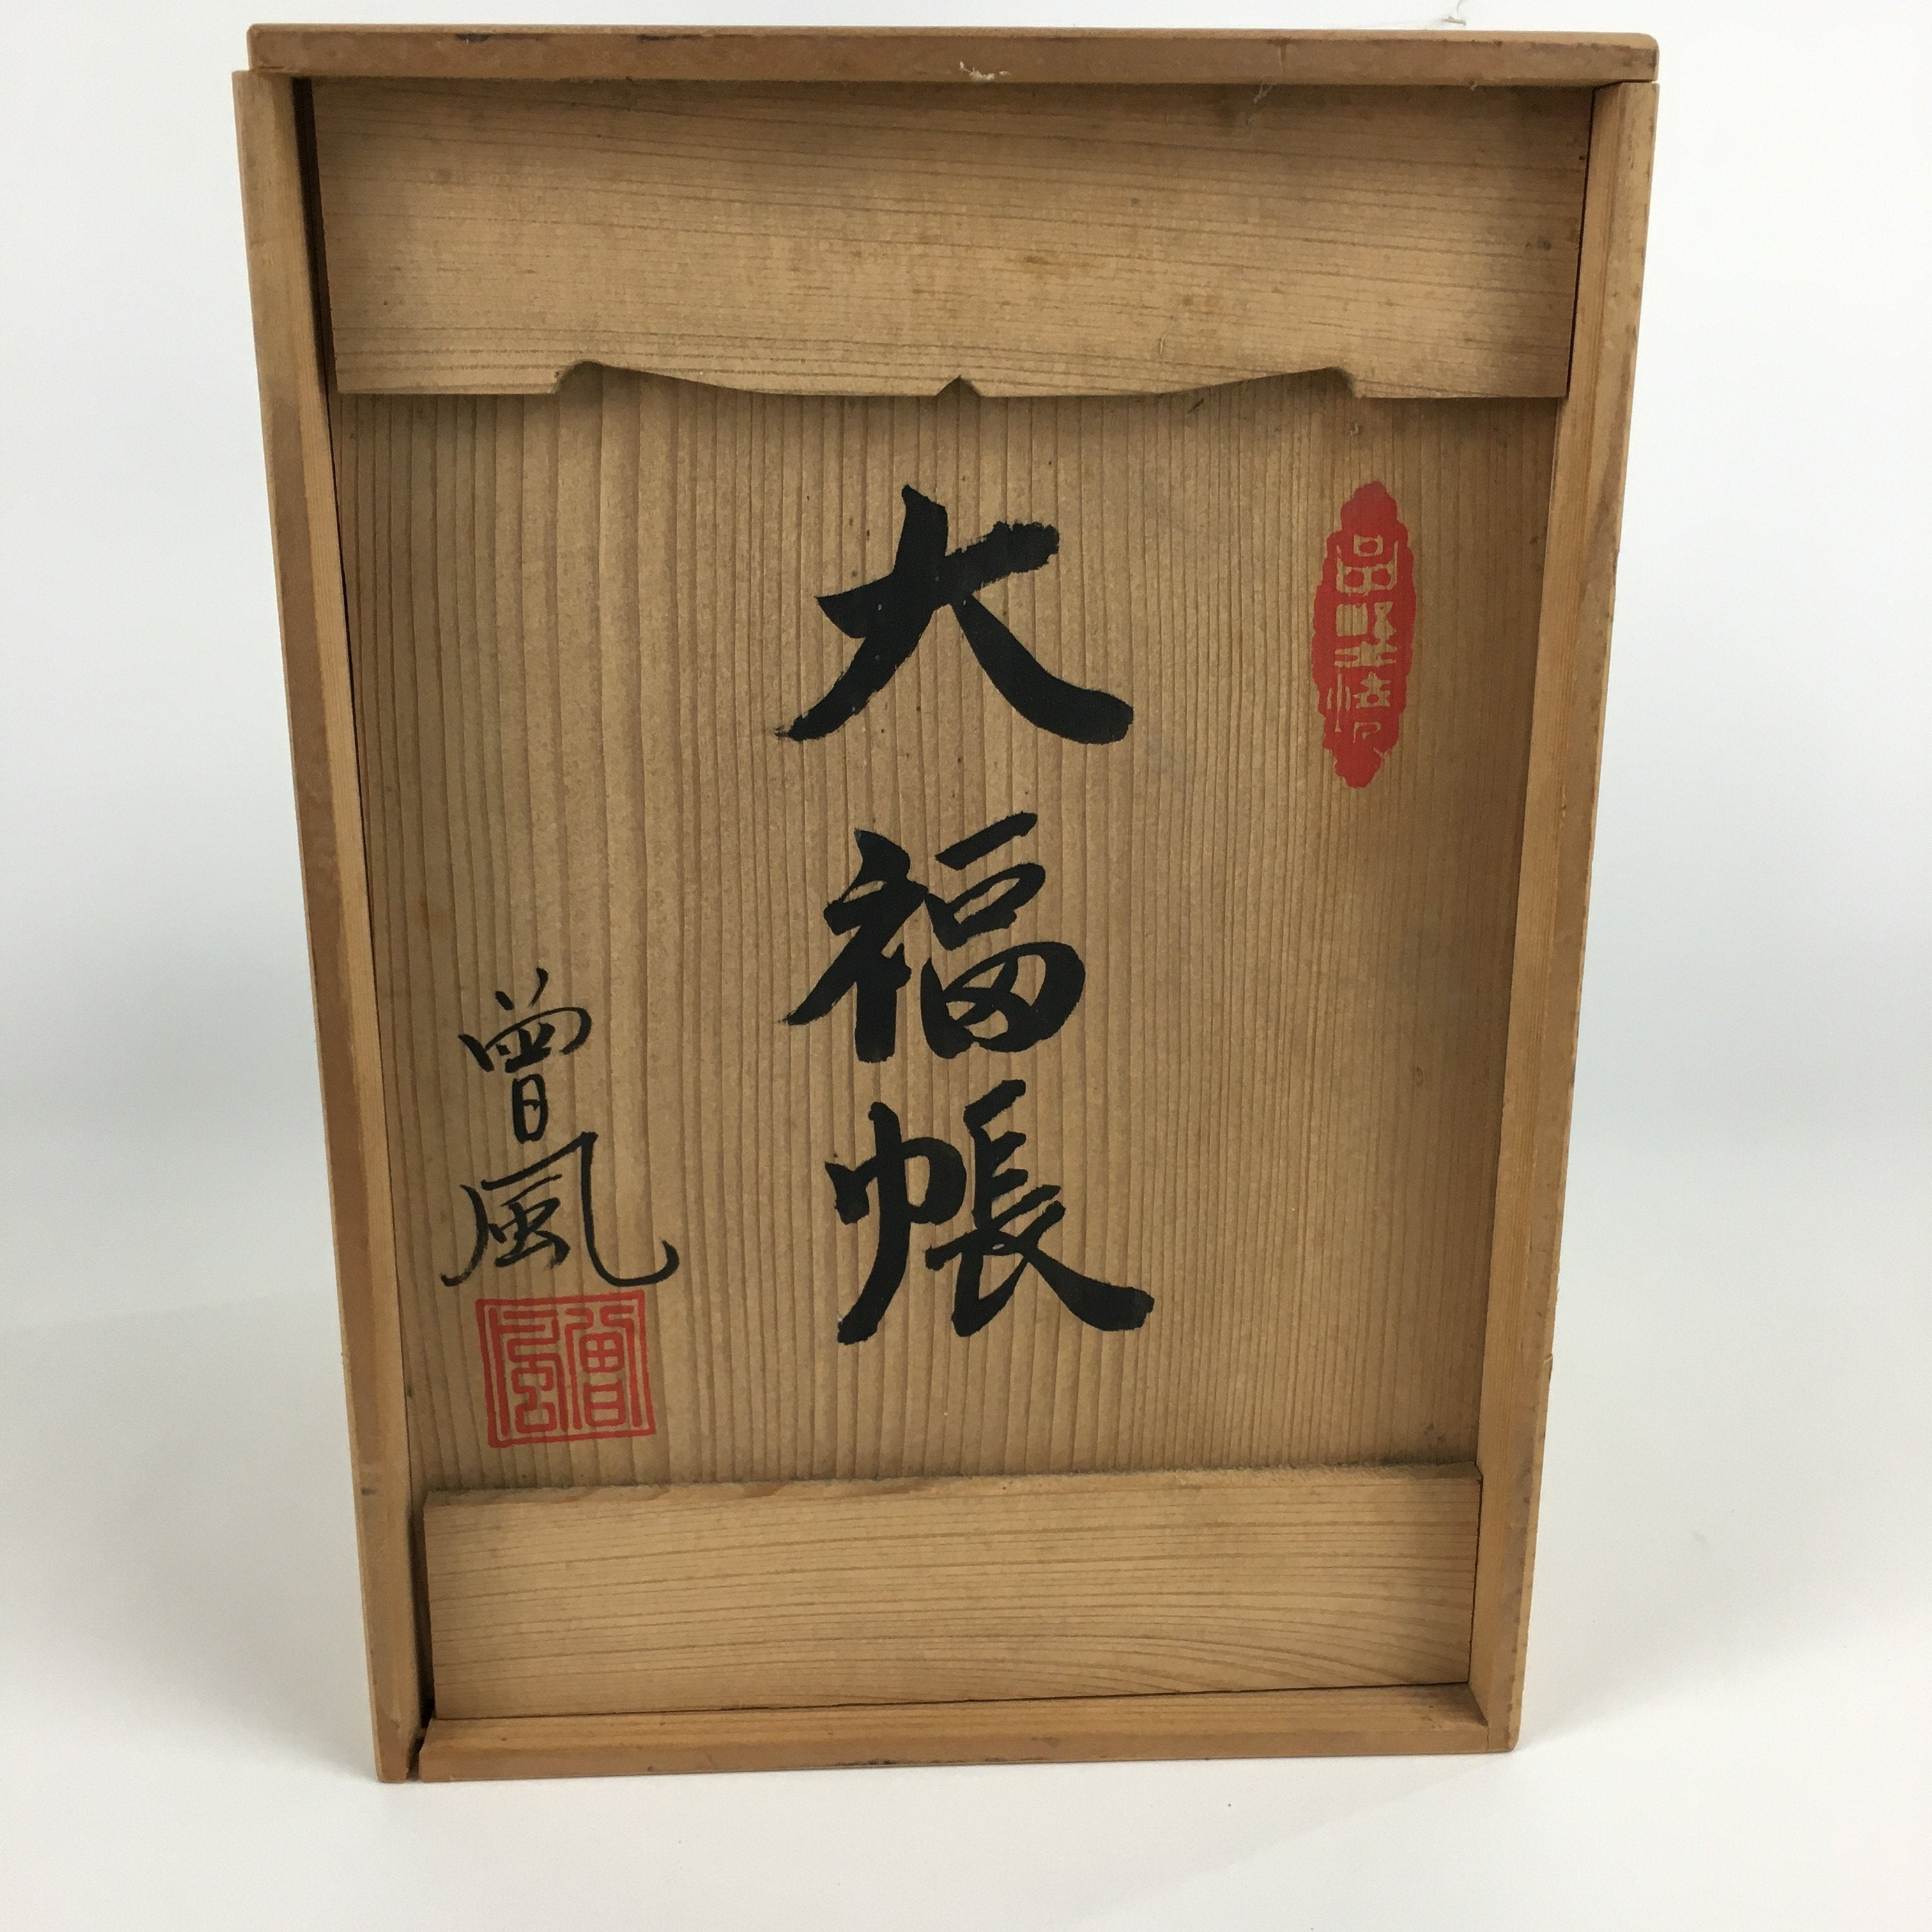 Japanese Wooden Storage Box Pottery Vtg Hako Inside18.4x18.6x26.4cm WB841